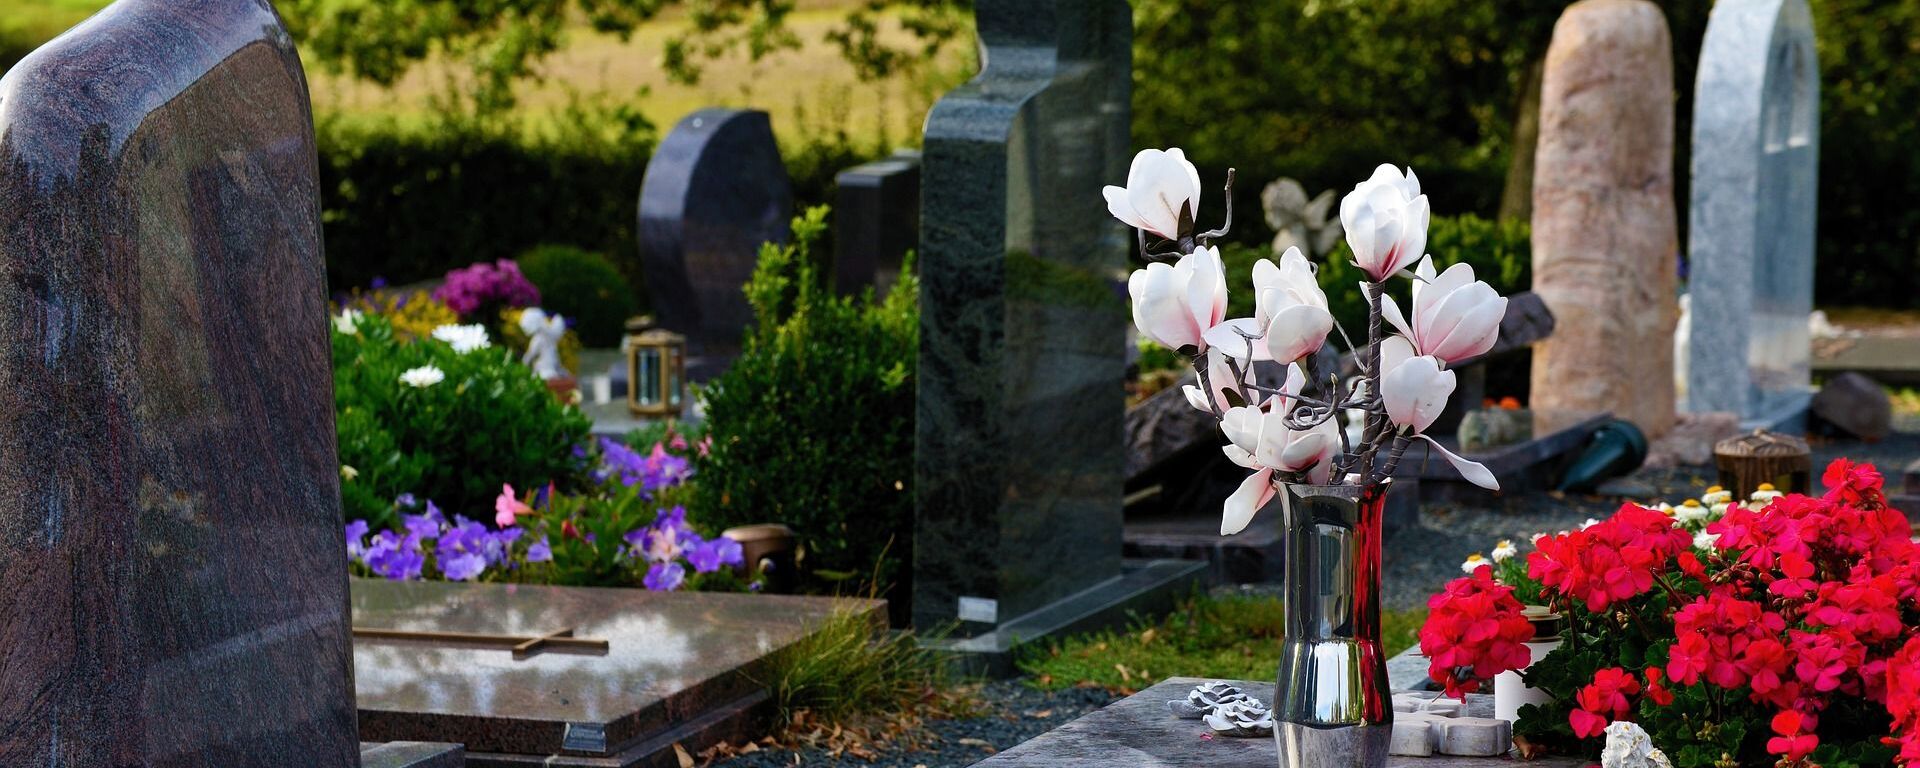 Цветы на кладбище - Sputnik Латвия, 1920, 17.07.2021